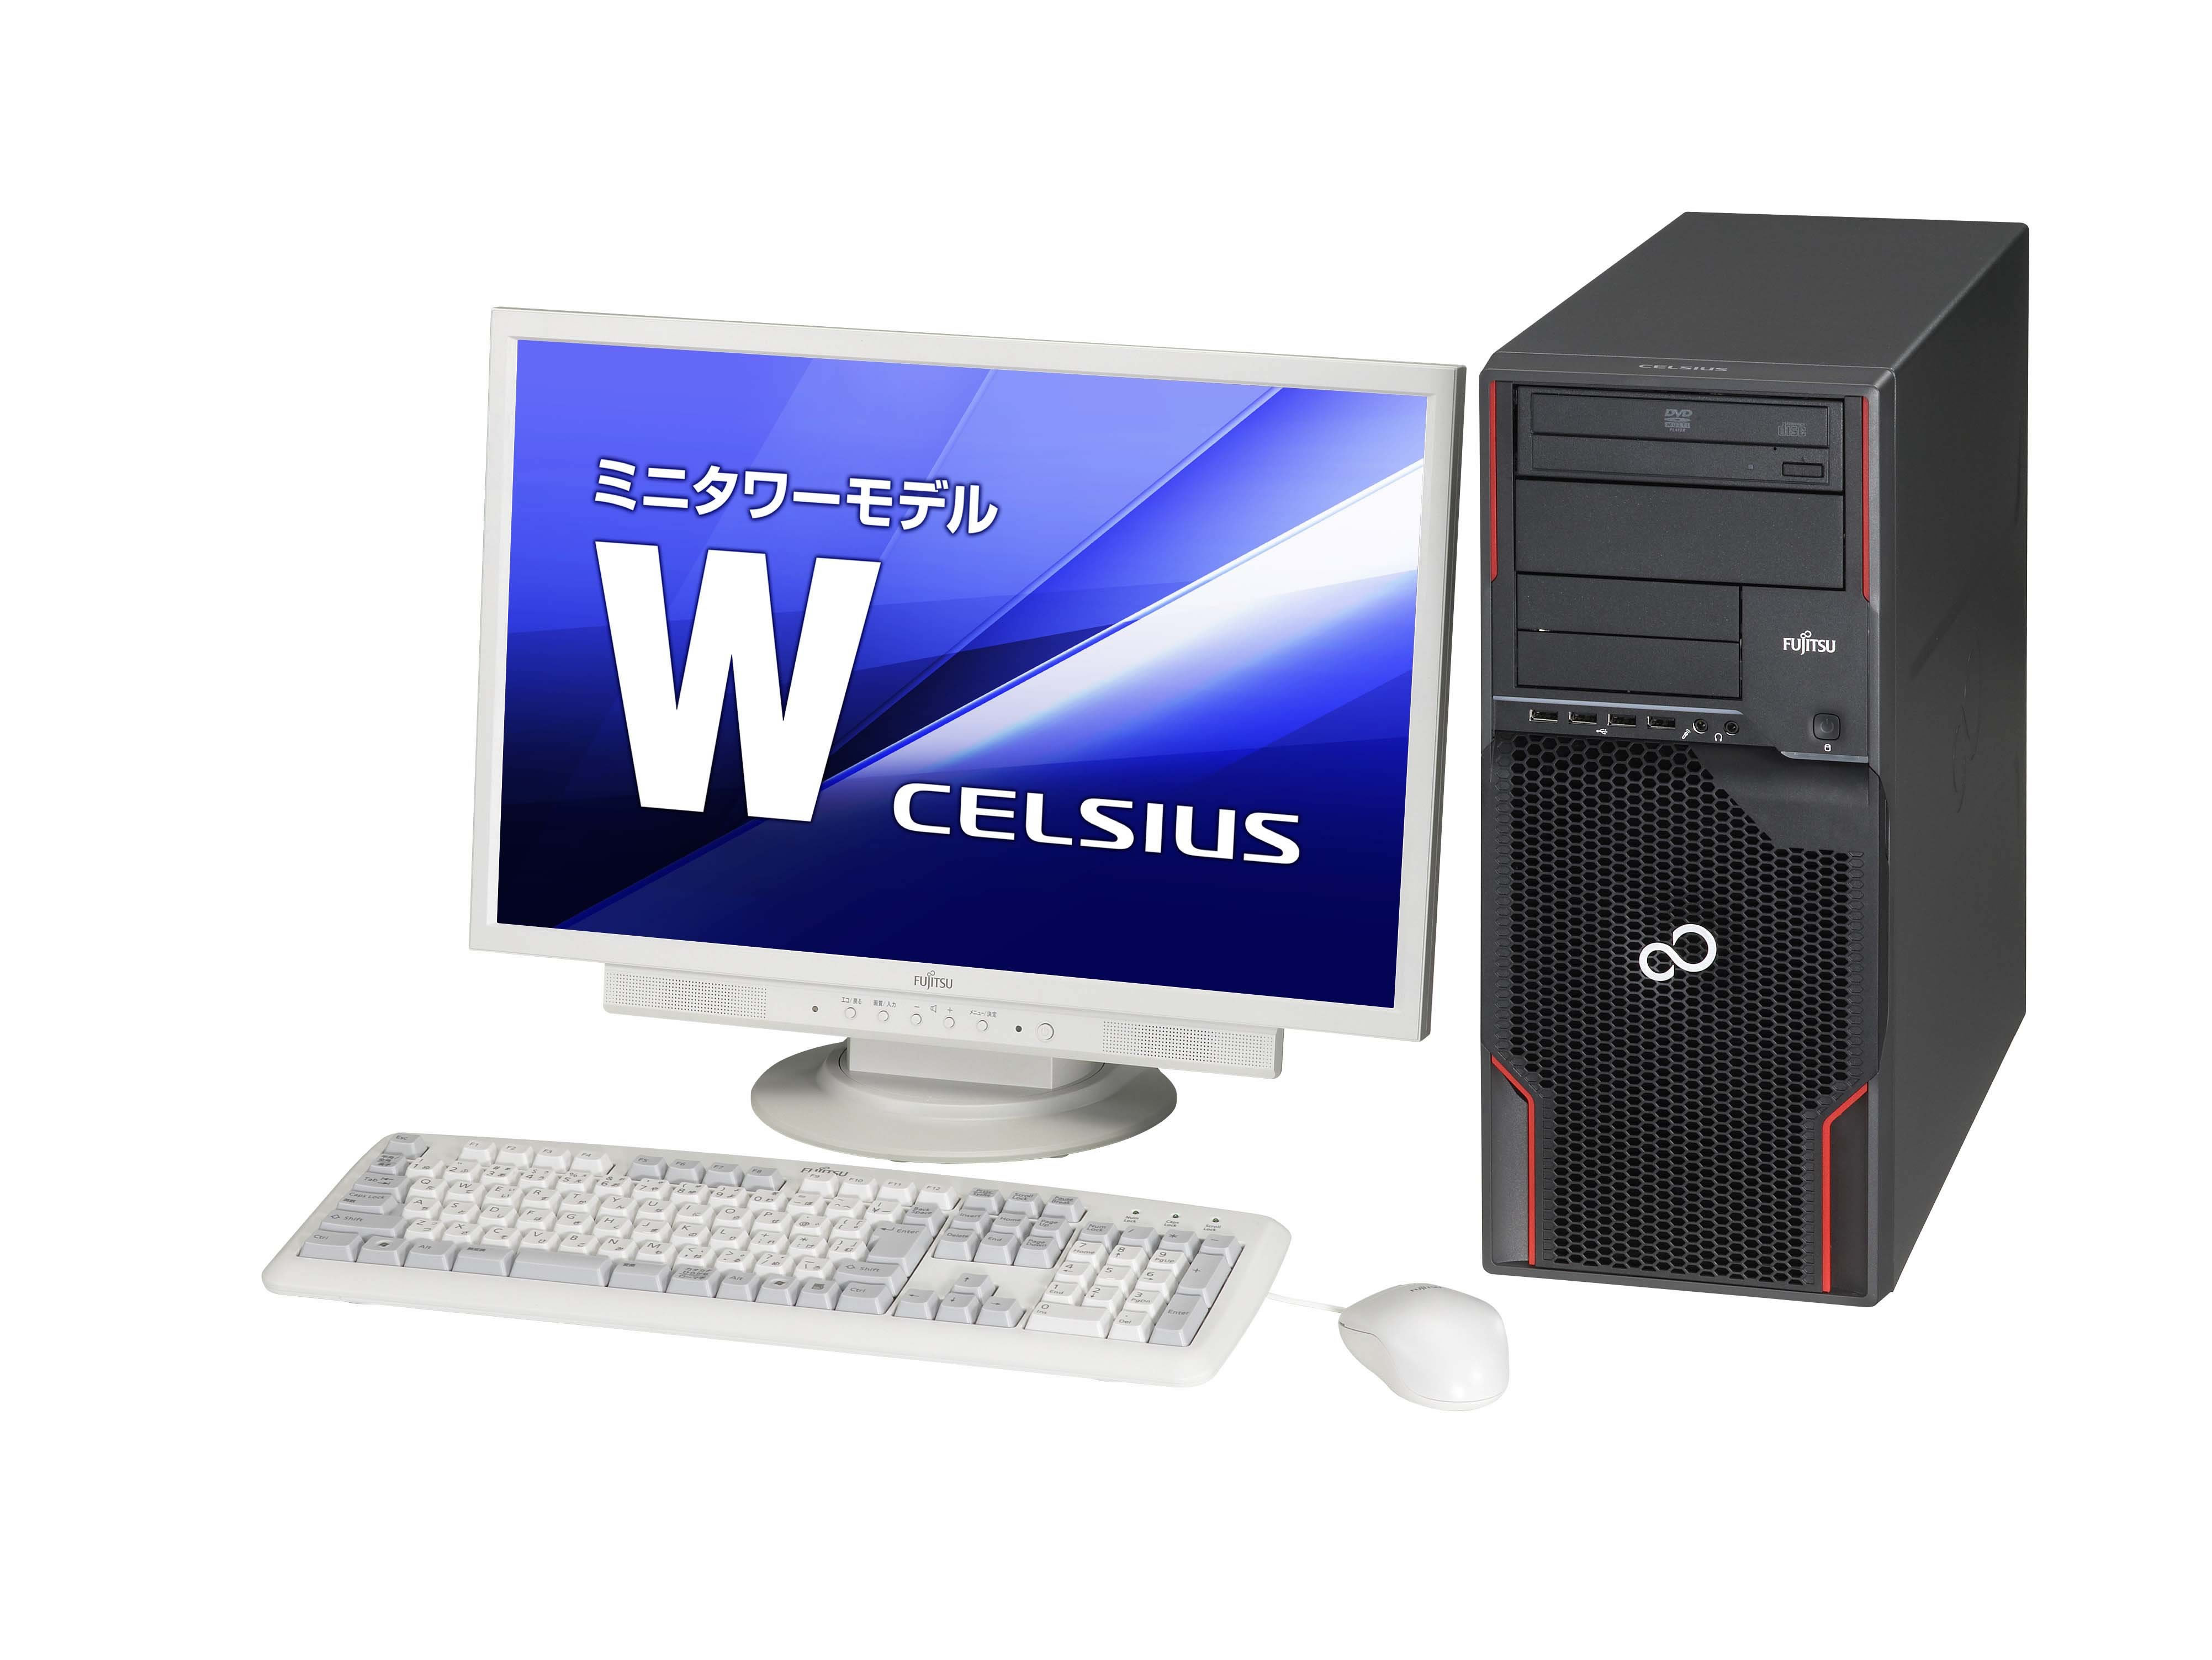 デスクトップ型PC富士通デスクトップパソコン CELSIUS J510 4コア8スレッドCPU搭載